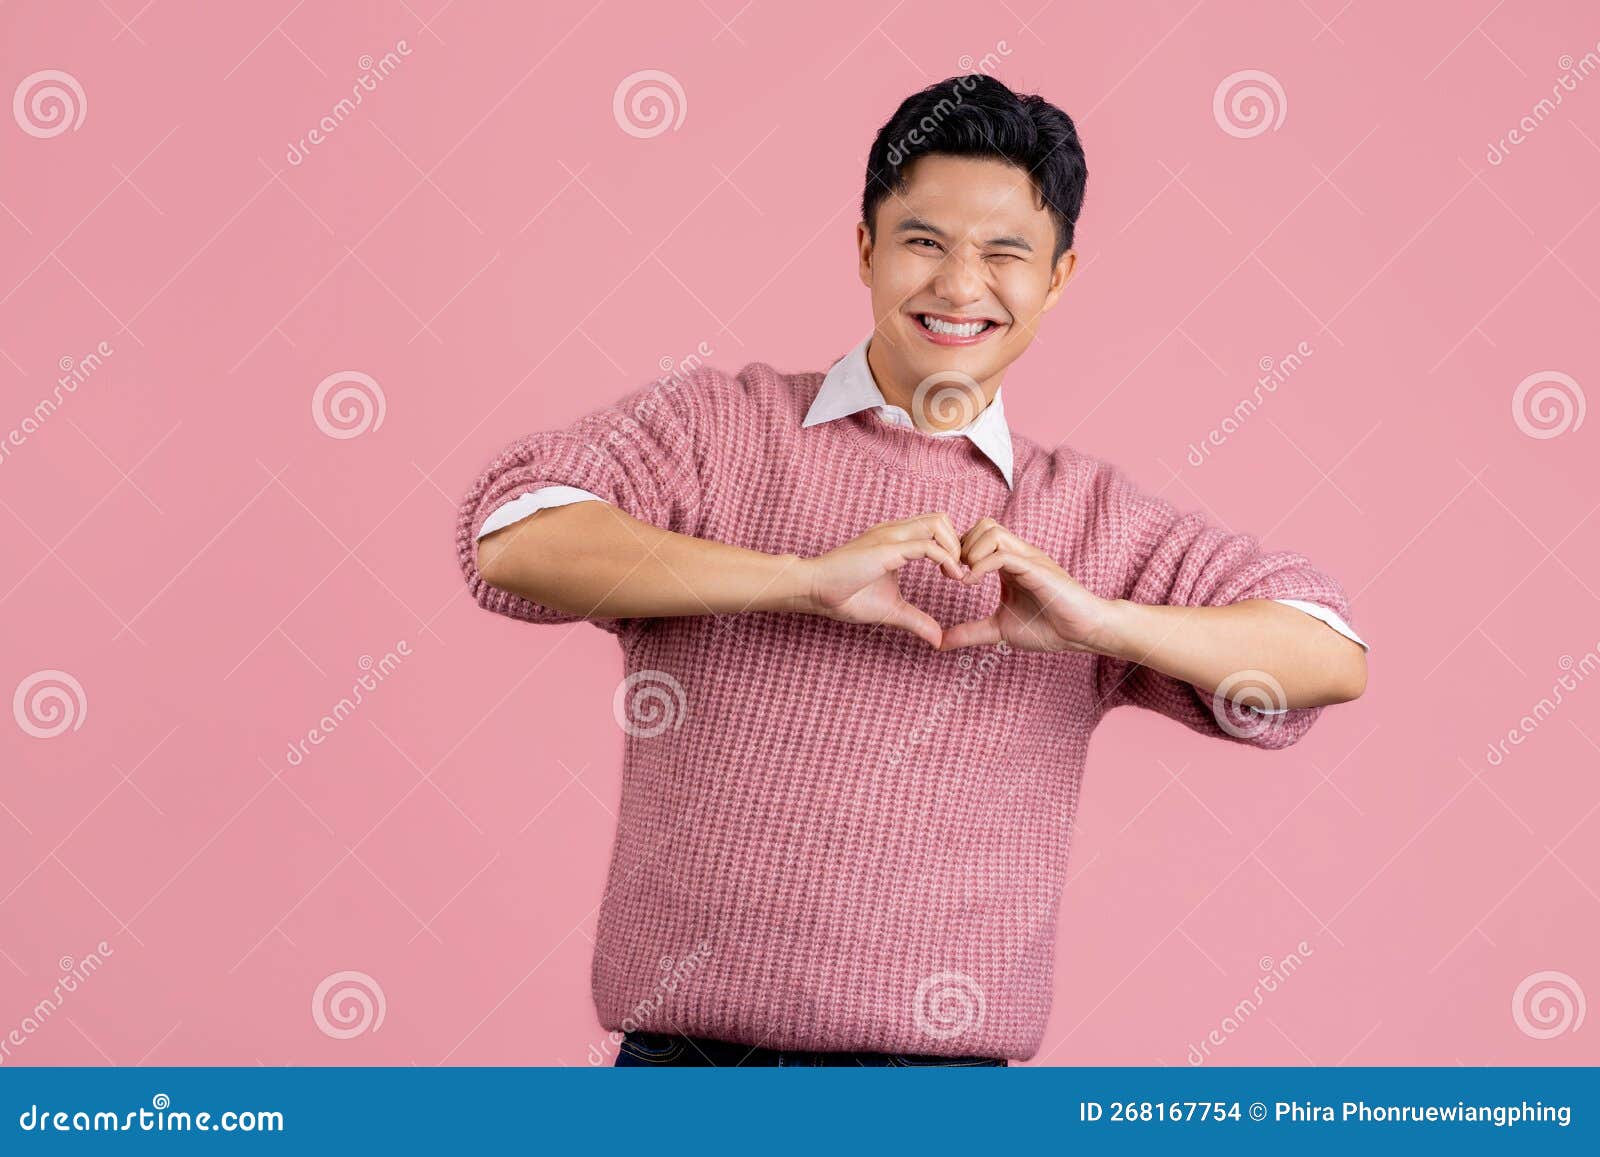 身穿休闲粉色毛衣的亚洲男青年热爱地用双手做心形符号形状. 浪漫概念  image